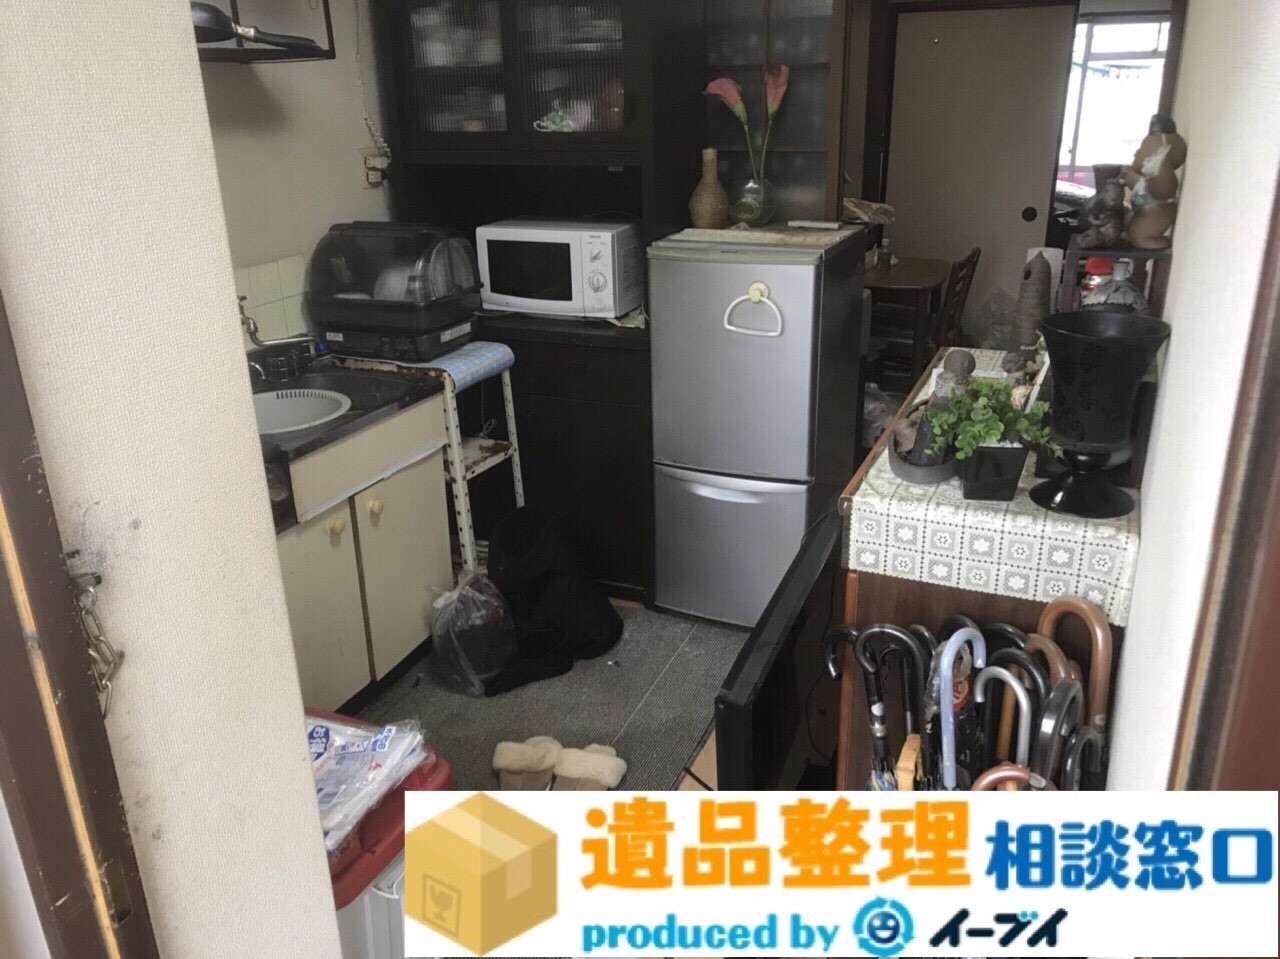 大阪府貝塚市で遺品整理に伴う台所の片付けや家具処分をしました。のアイキャッチ